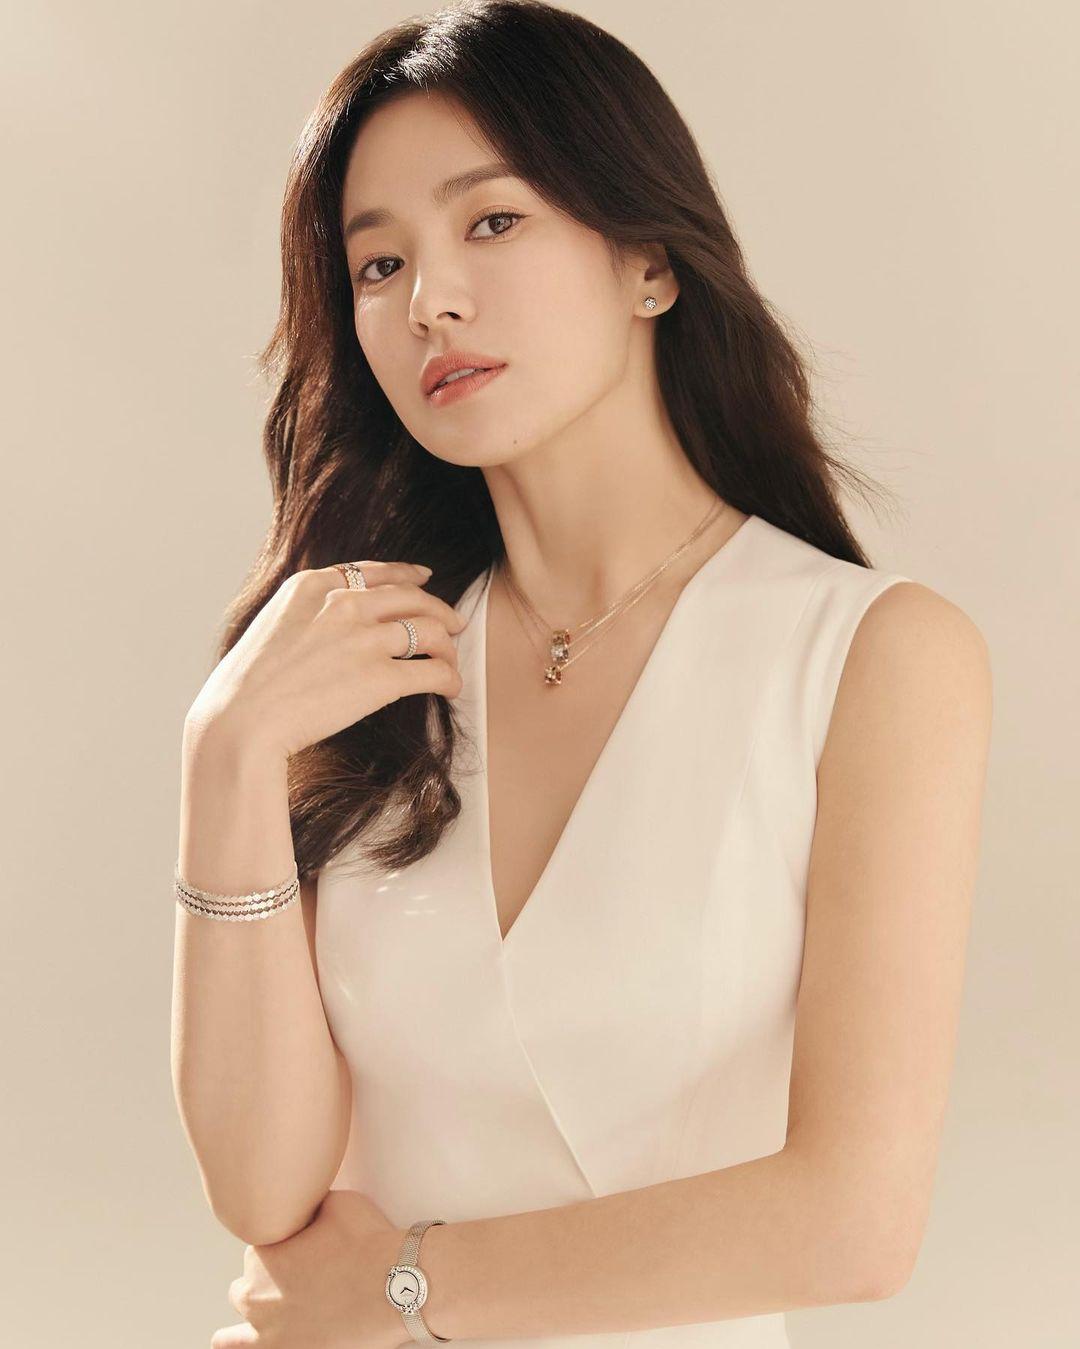 Từ trang phục đến phụ kiện đều đẹp xuất sắc, Song Hye Kyo đang đóng phim  hay diễn thời trang?